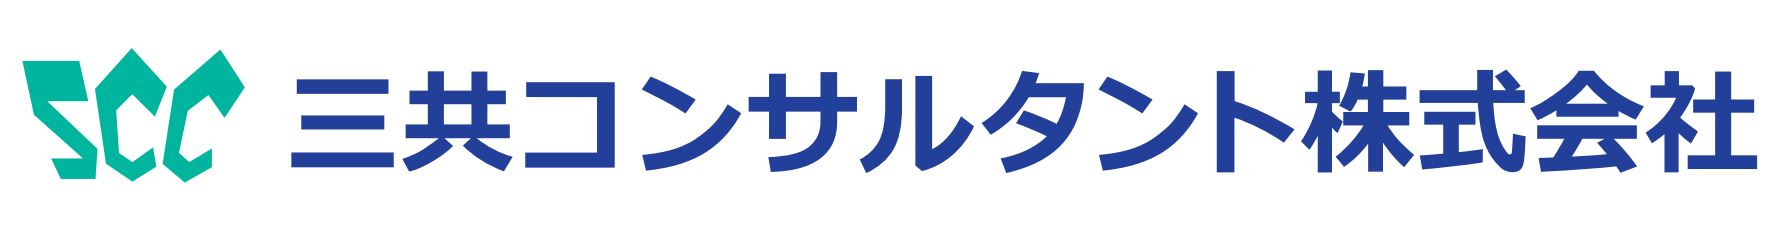 三共コンサルタント株式会社のロゴ画像